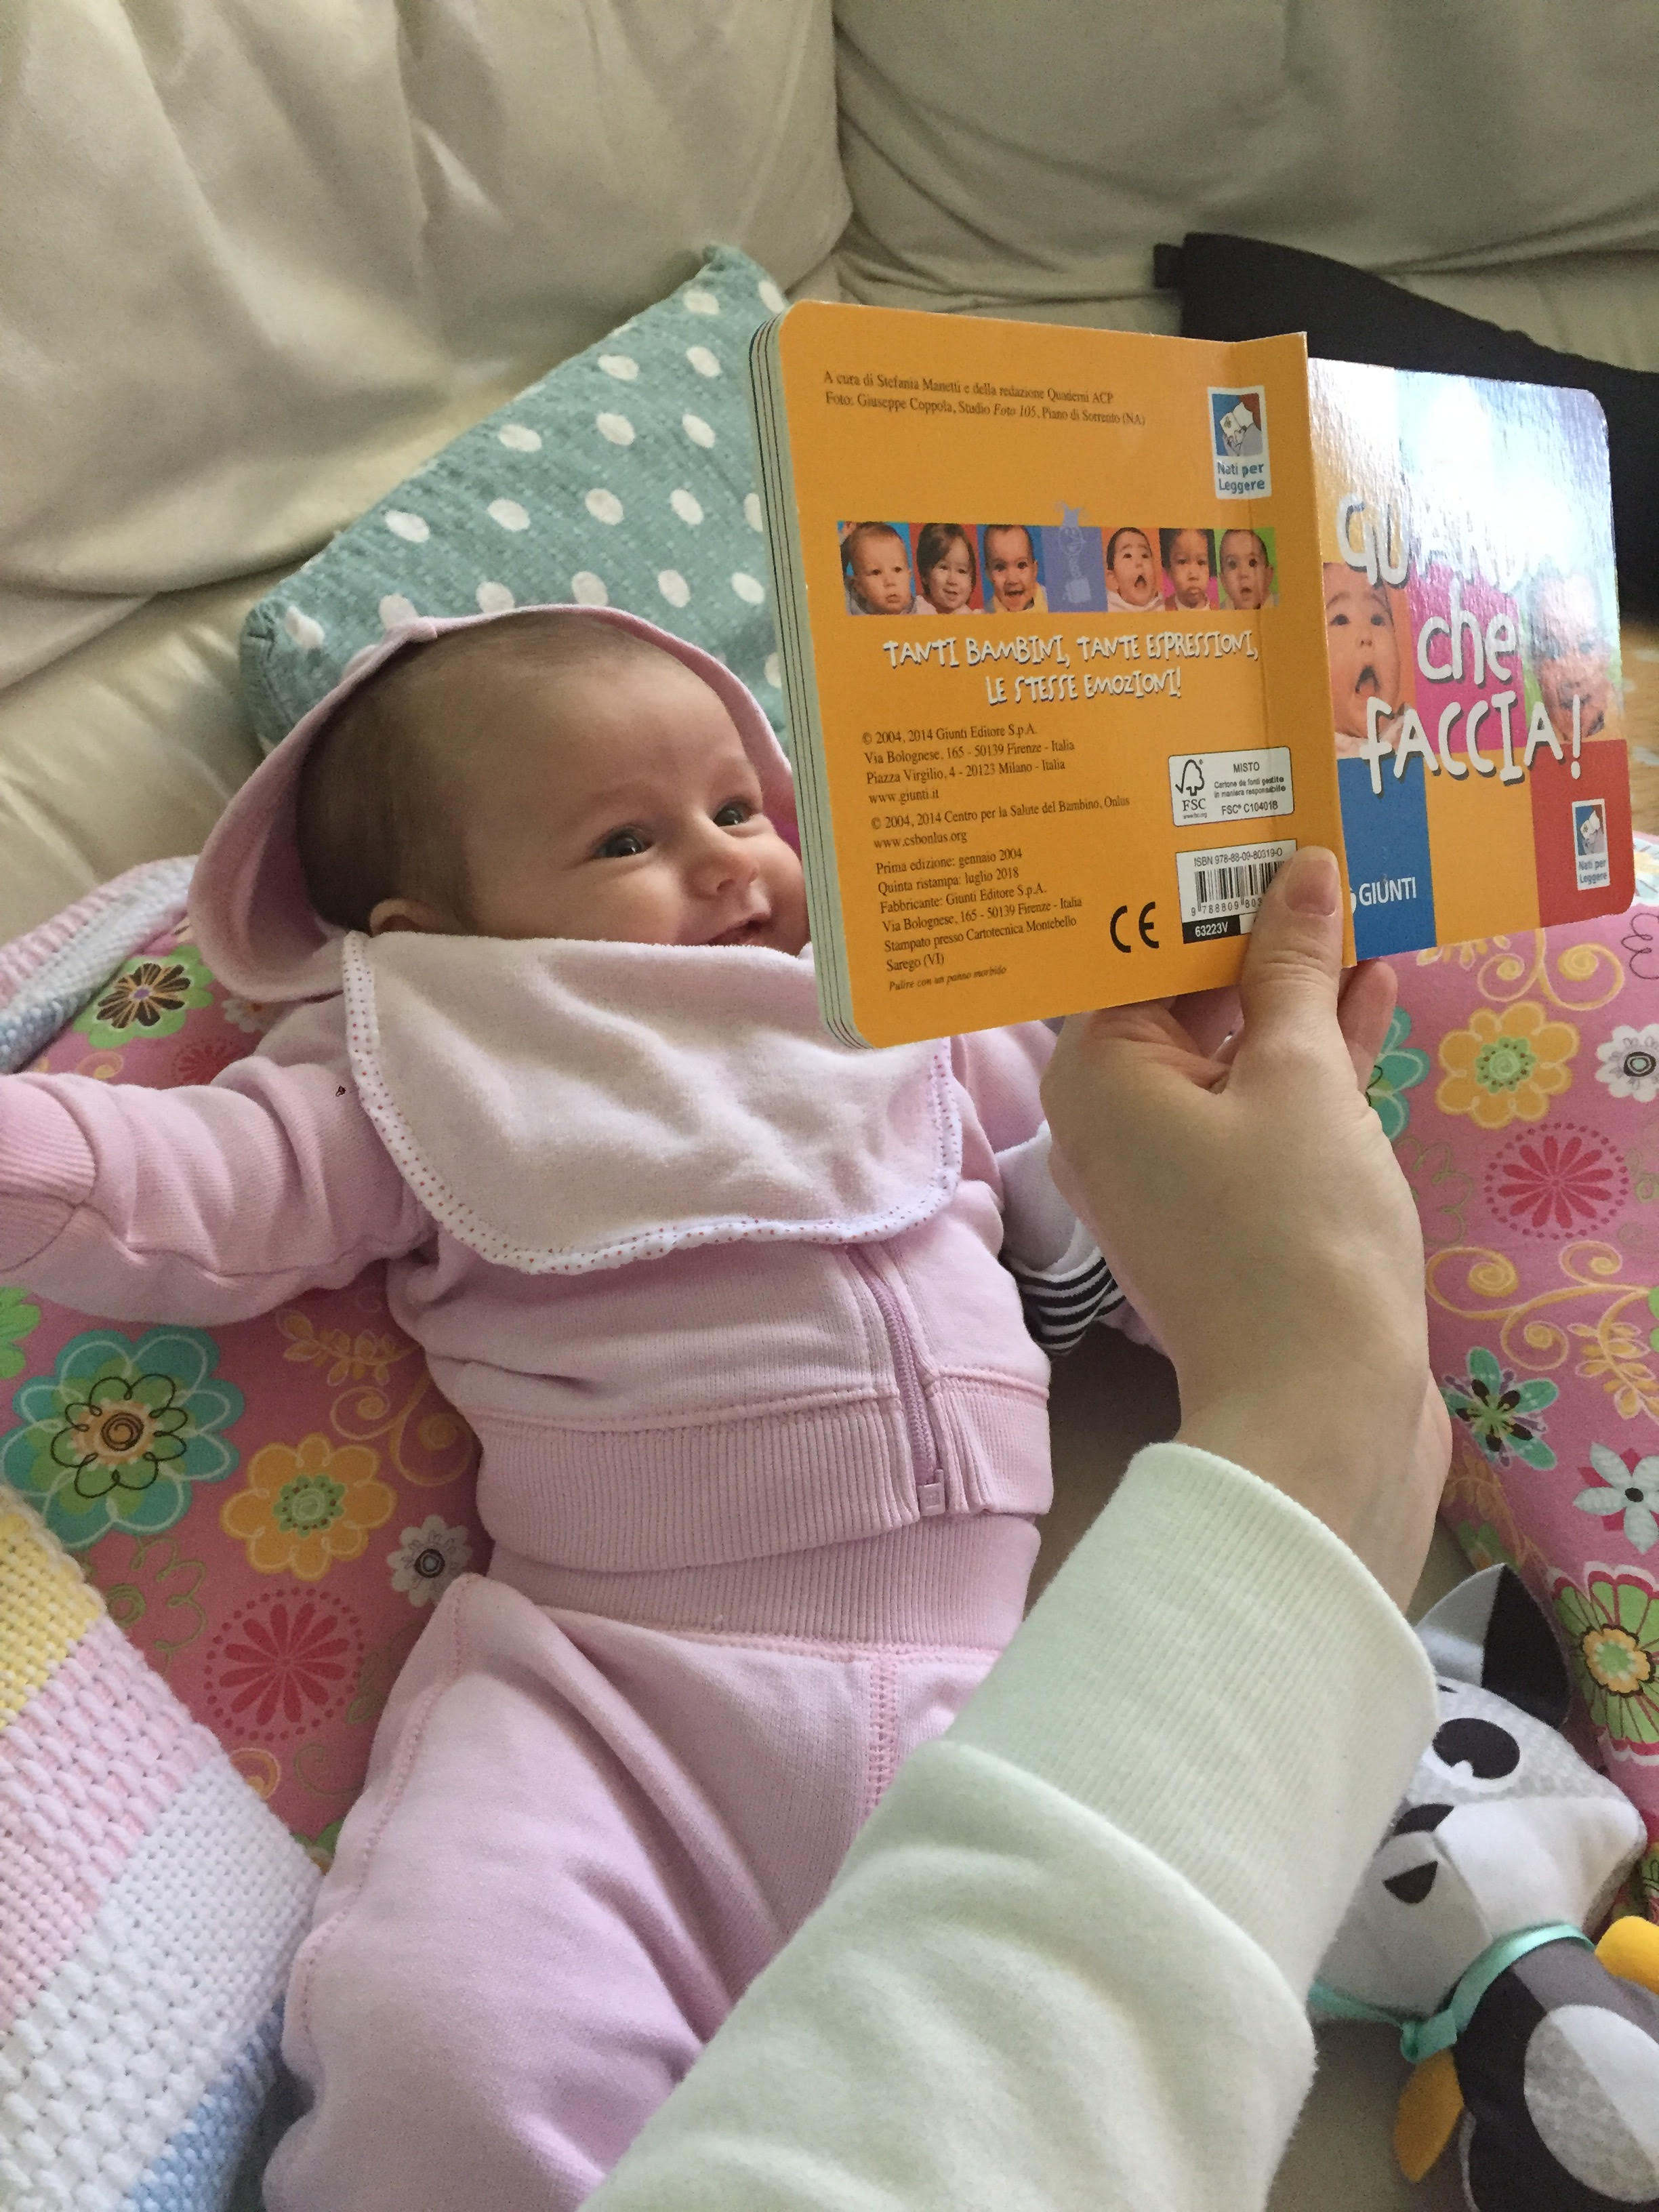 Attività e libri utili per stimolare un neonato - Psicologia Quotidiana